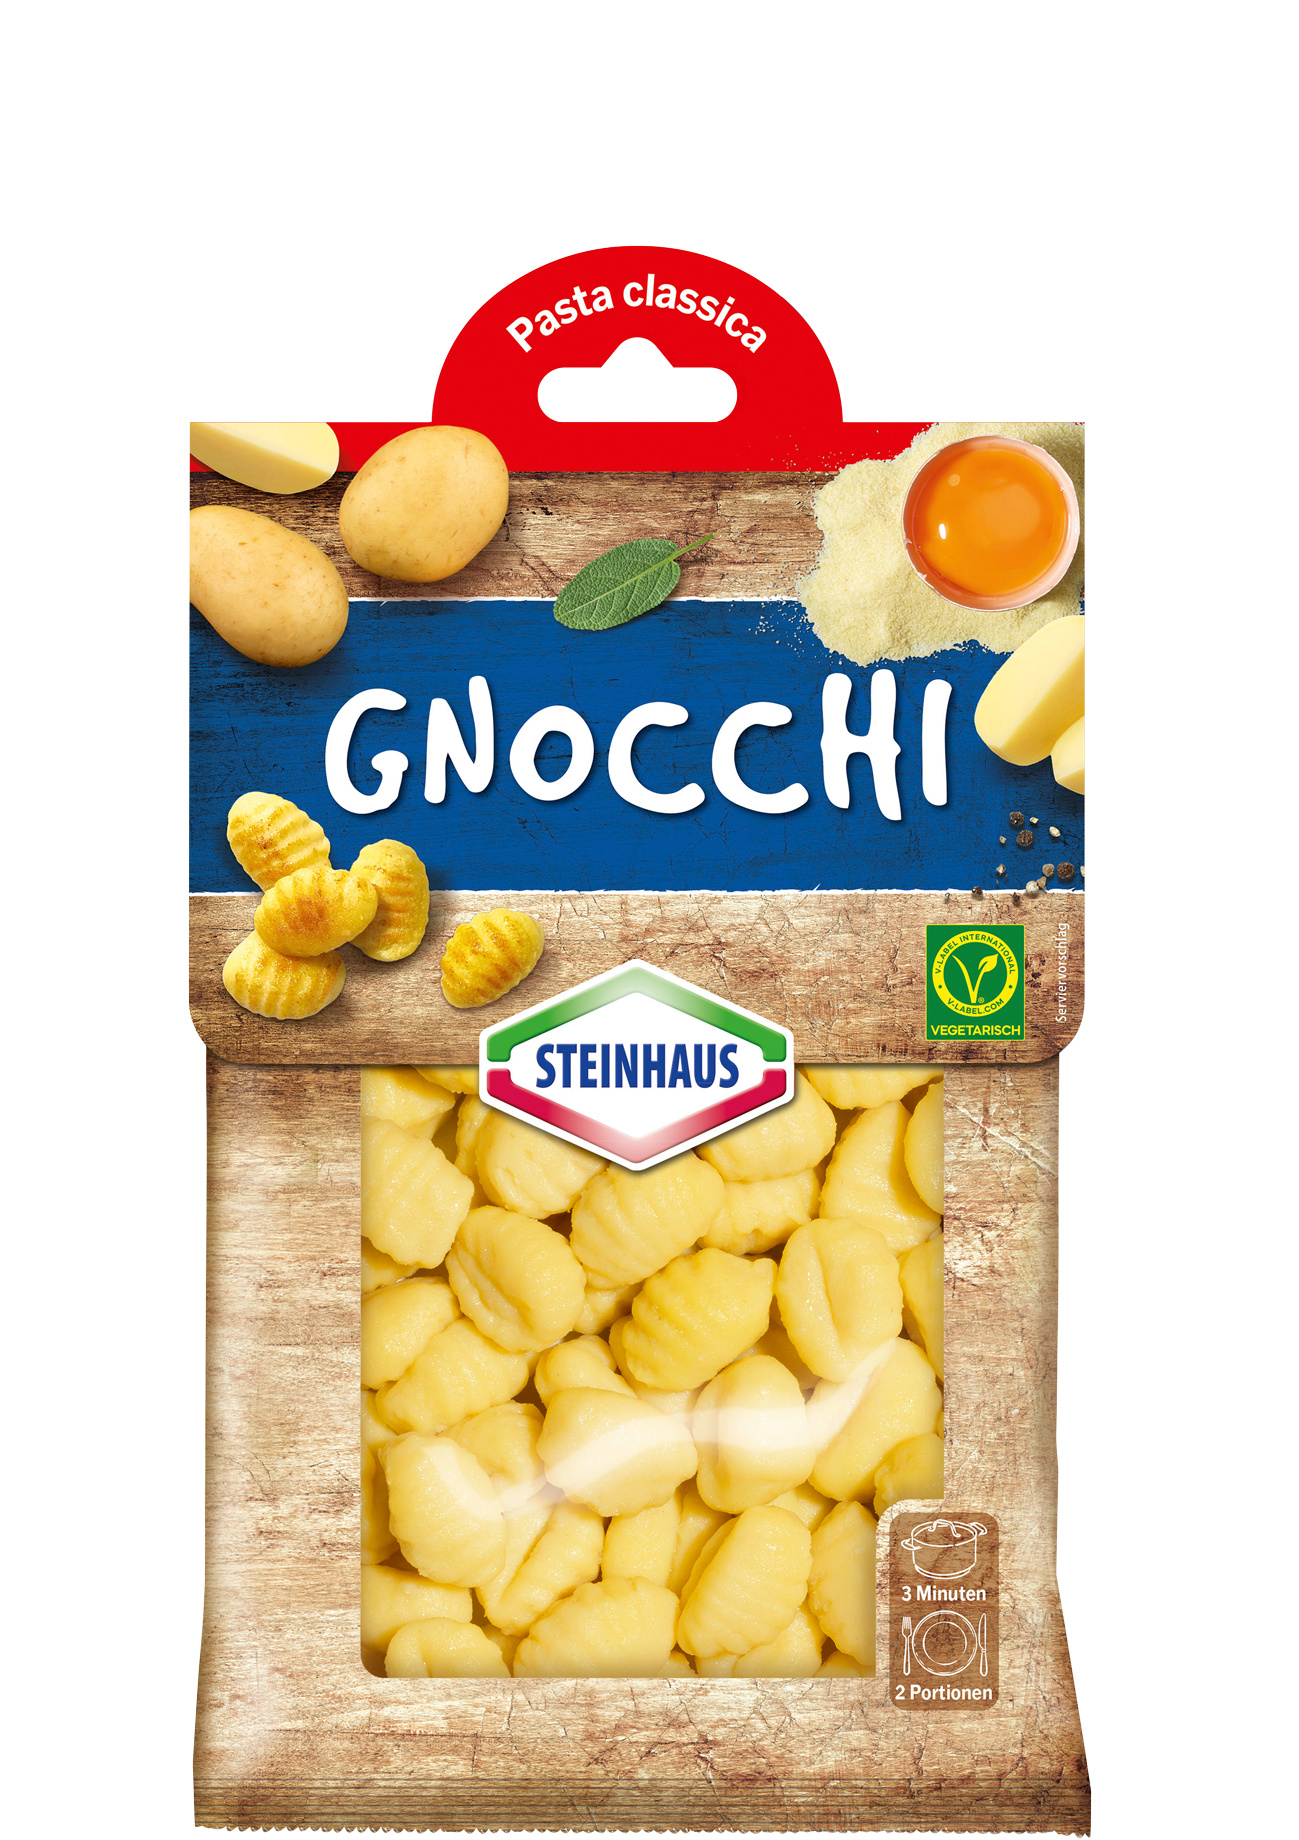 Gnocchi – Original italienische Kartoffelklößchen, ideal für die Zubereitung in der Pfanne – das ist Pastagenuss für jeden Tag.